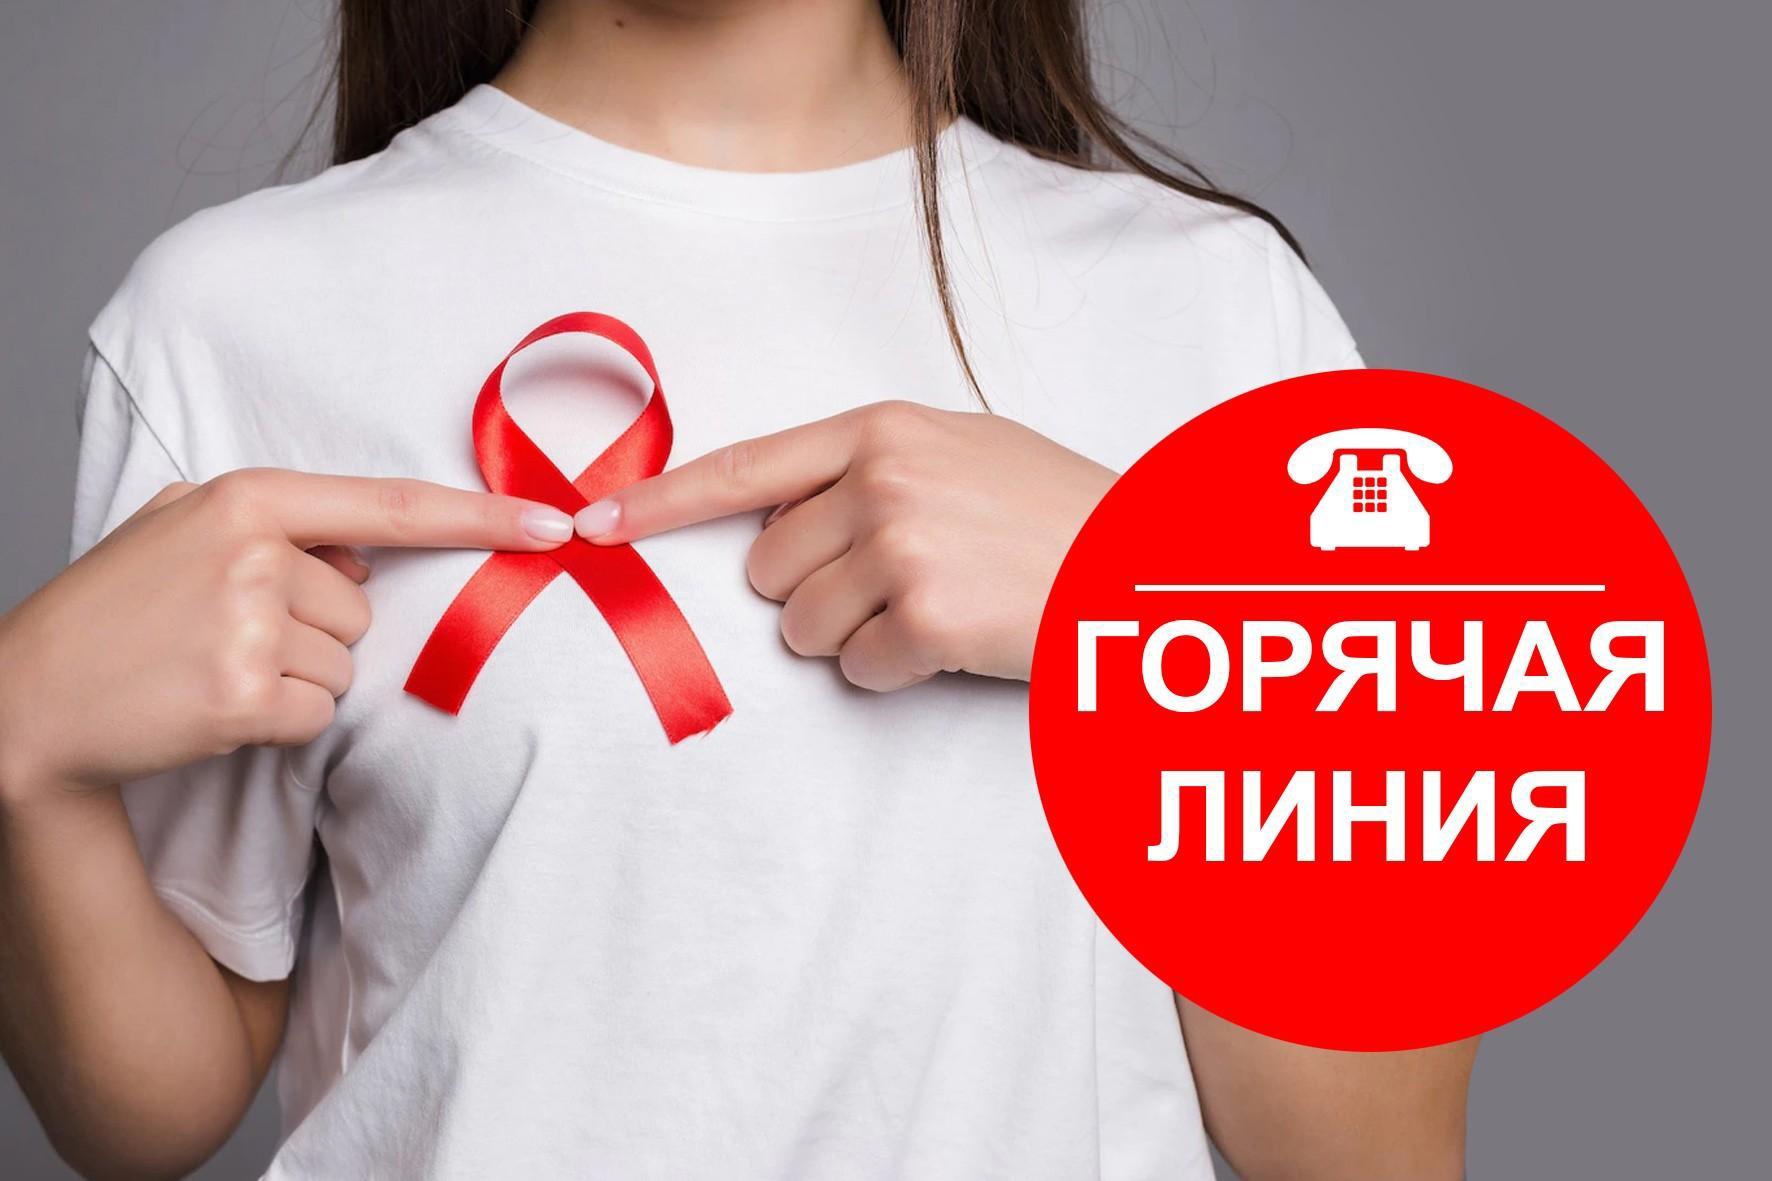 В Курской области с 27 ноября стартует горячая линия по профилактике ВИЧ-инфекции